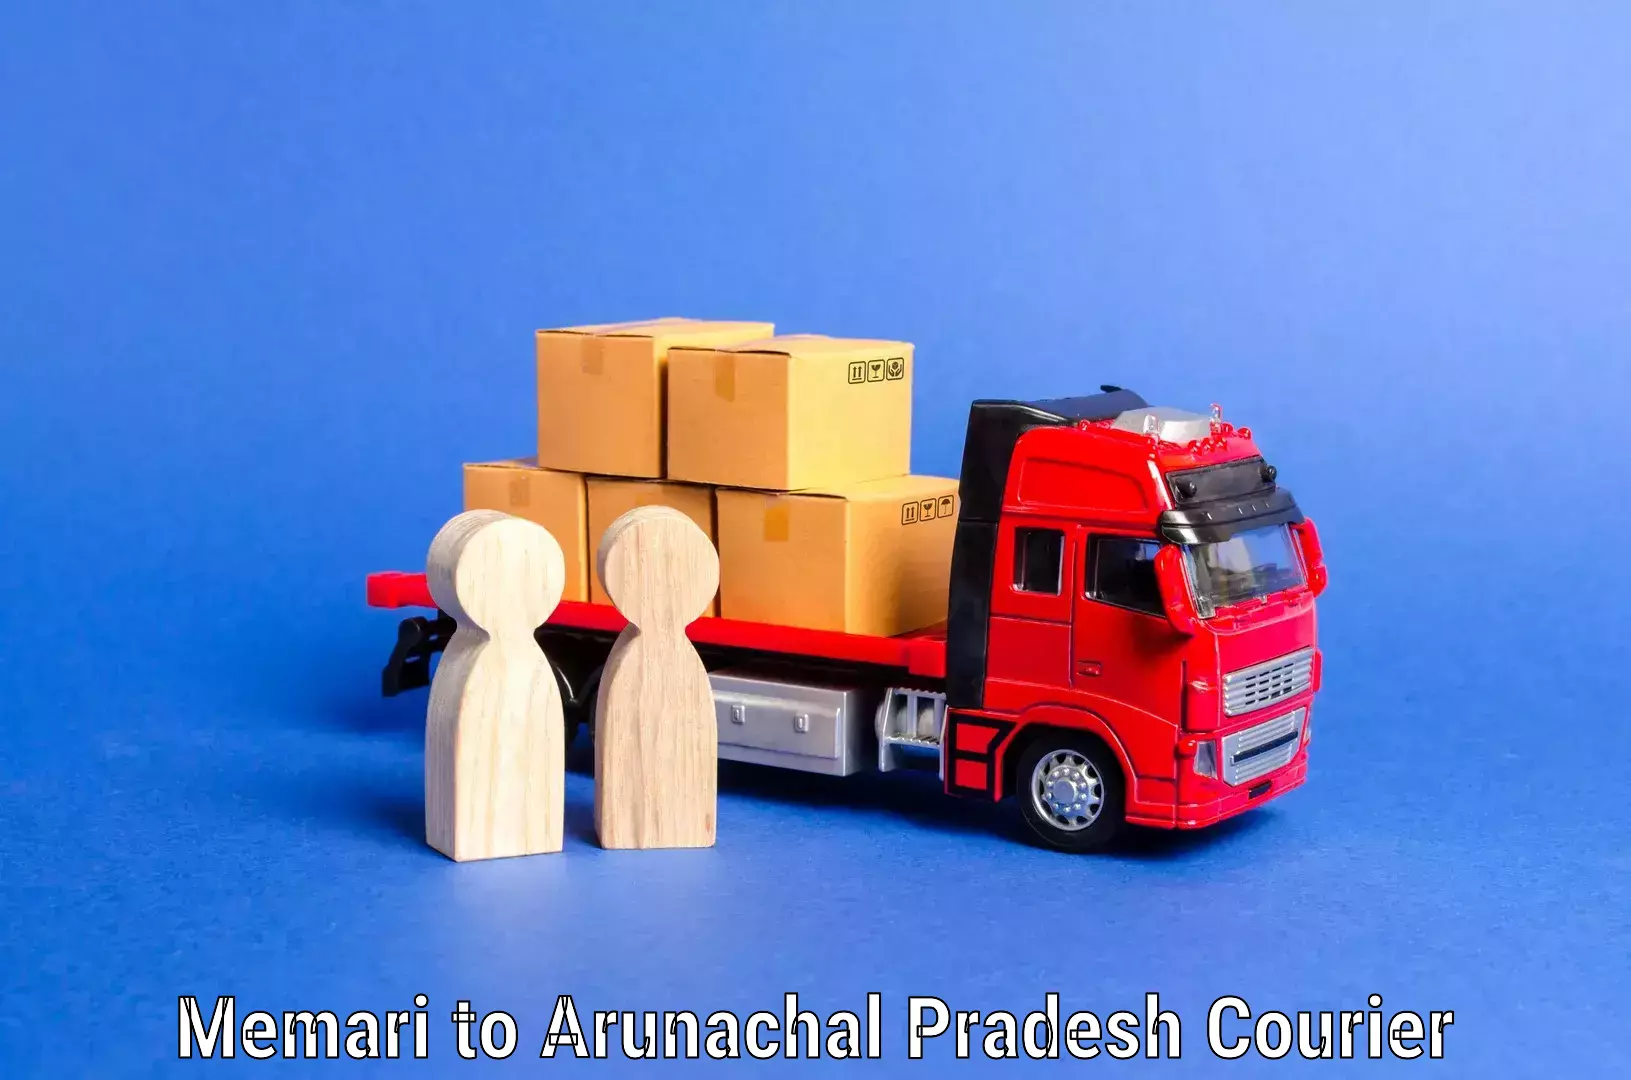 Professional movers and packers Memari to Arunachal Pradesh